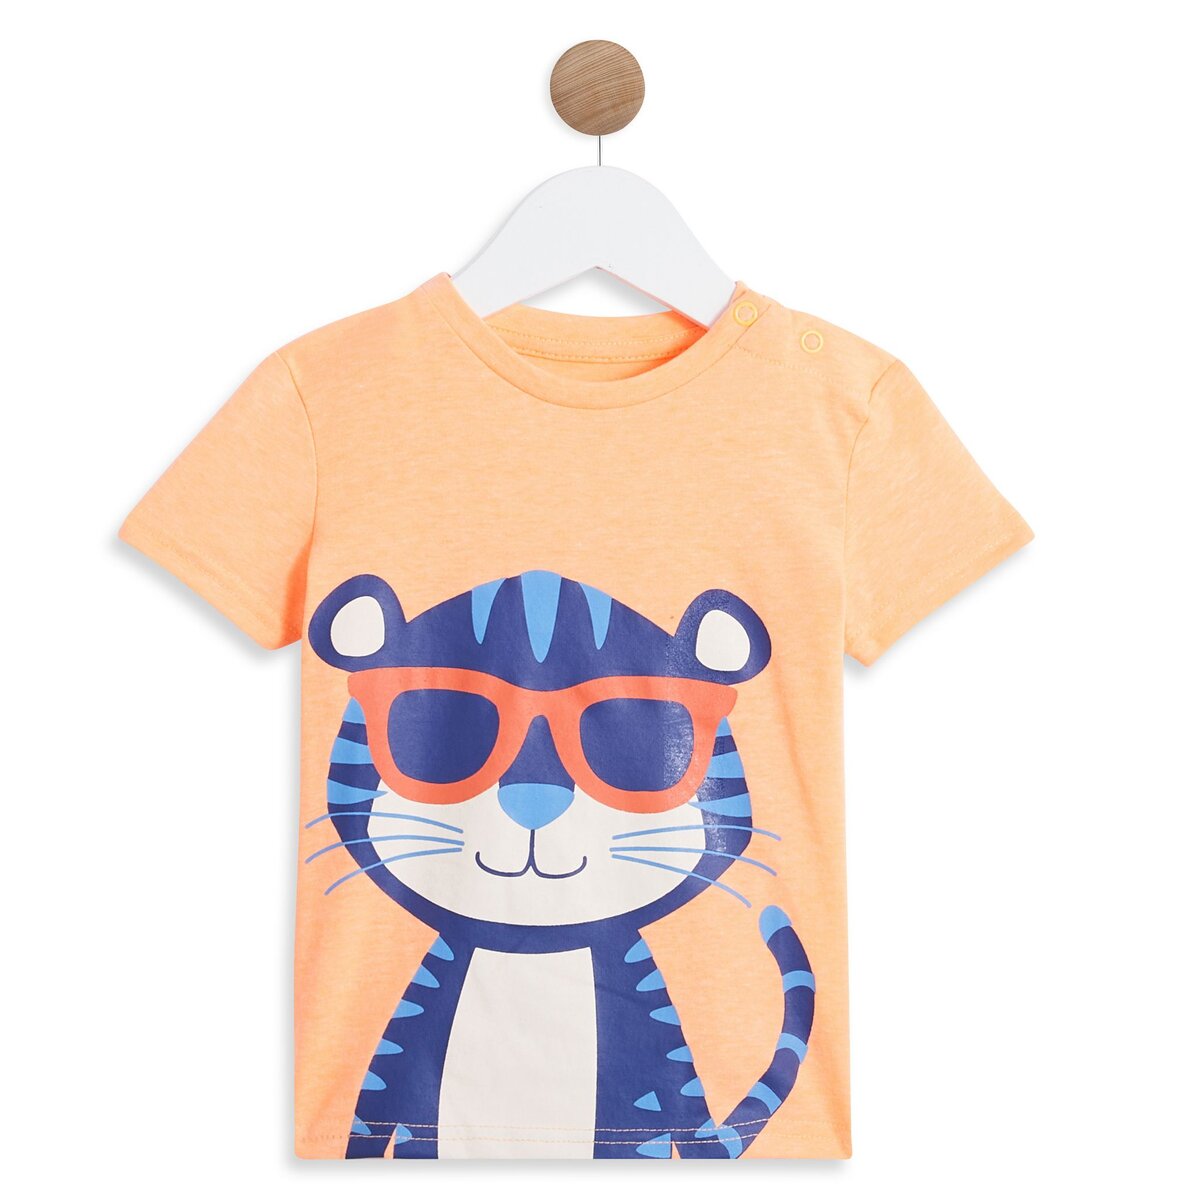 INEXTENSO T-shirt orange fluo bébé garçon 